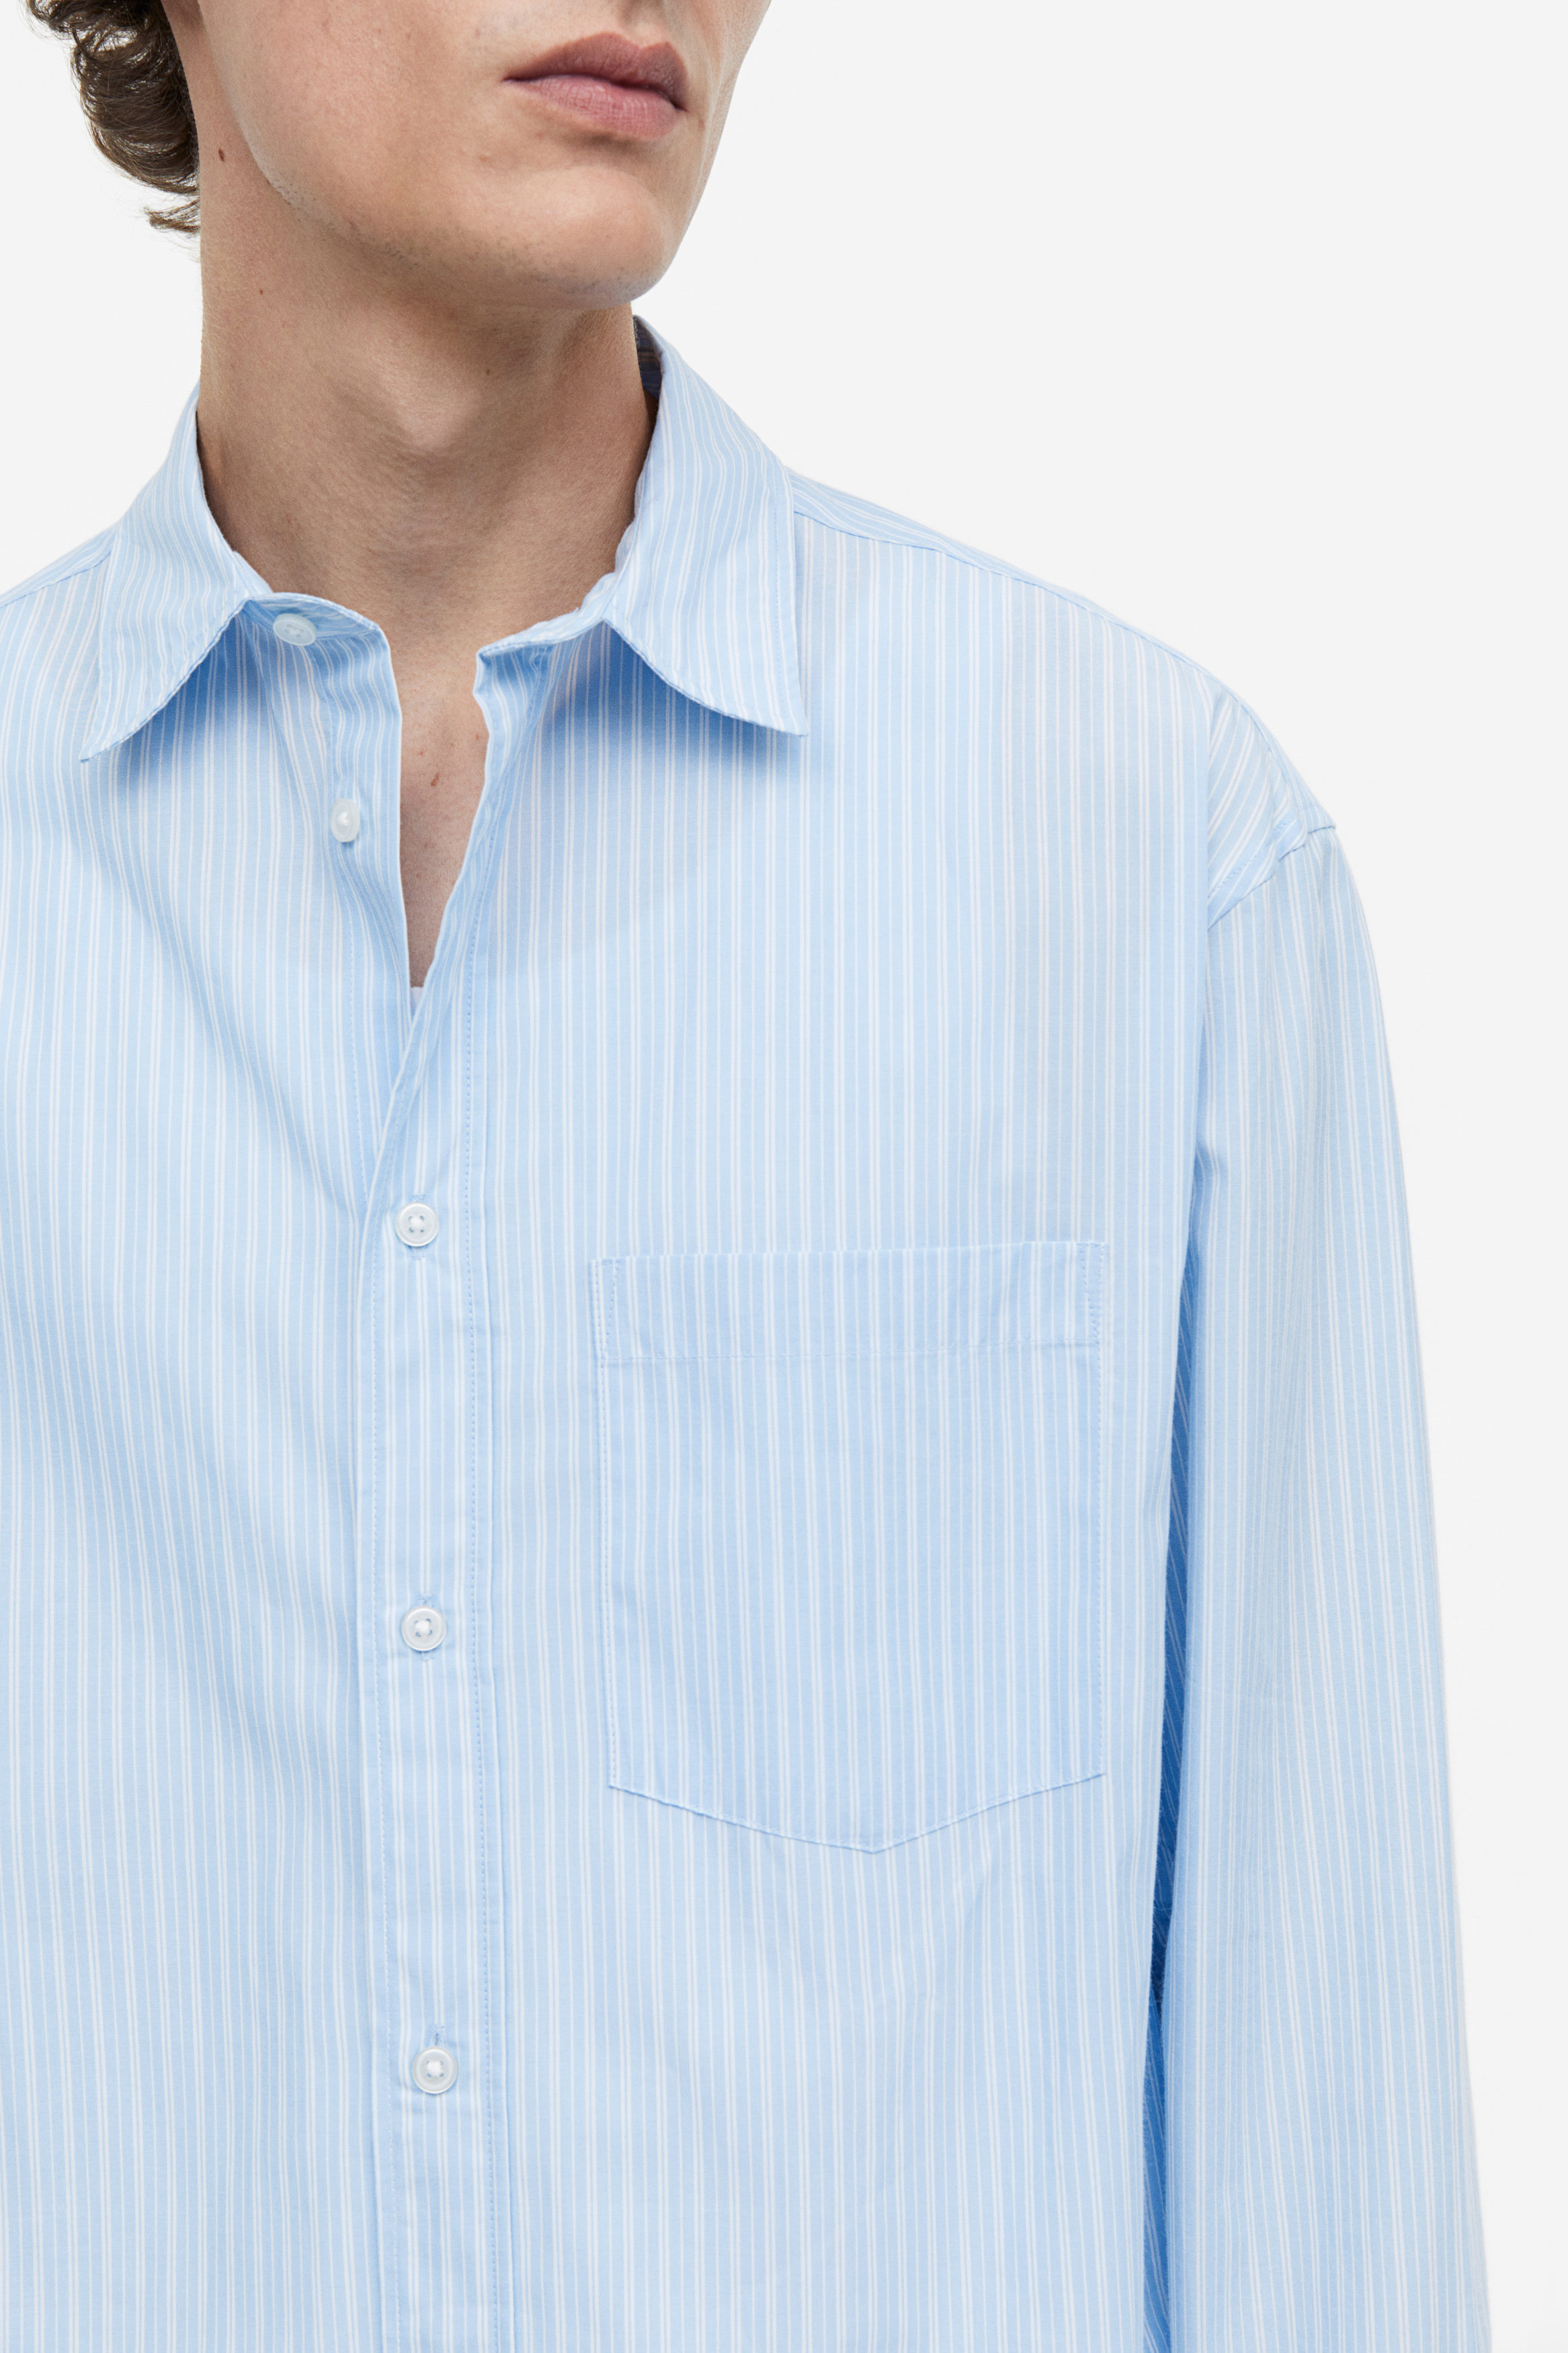 Buy Relaxed Fit Poplin shirt online in Kuwait